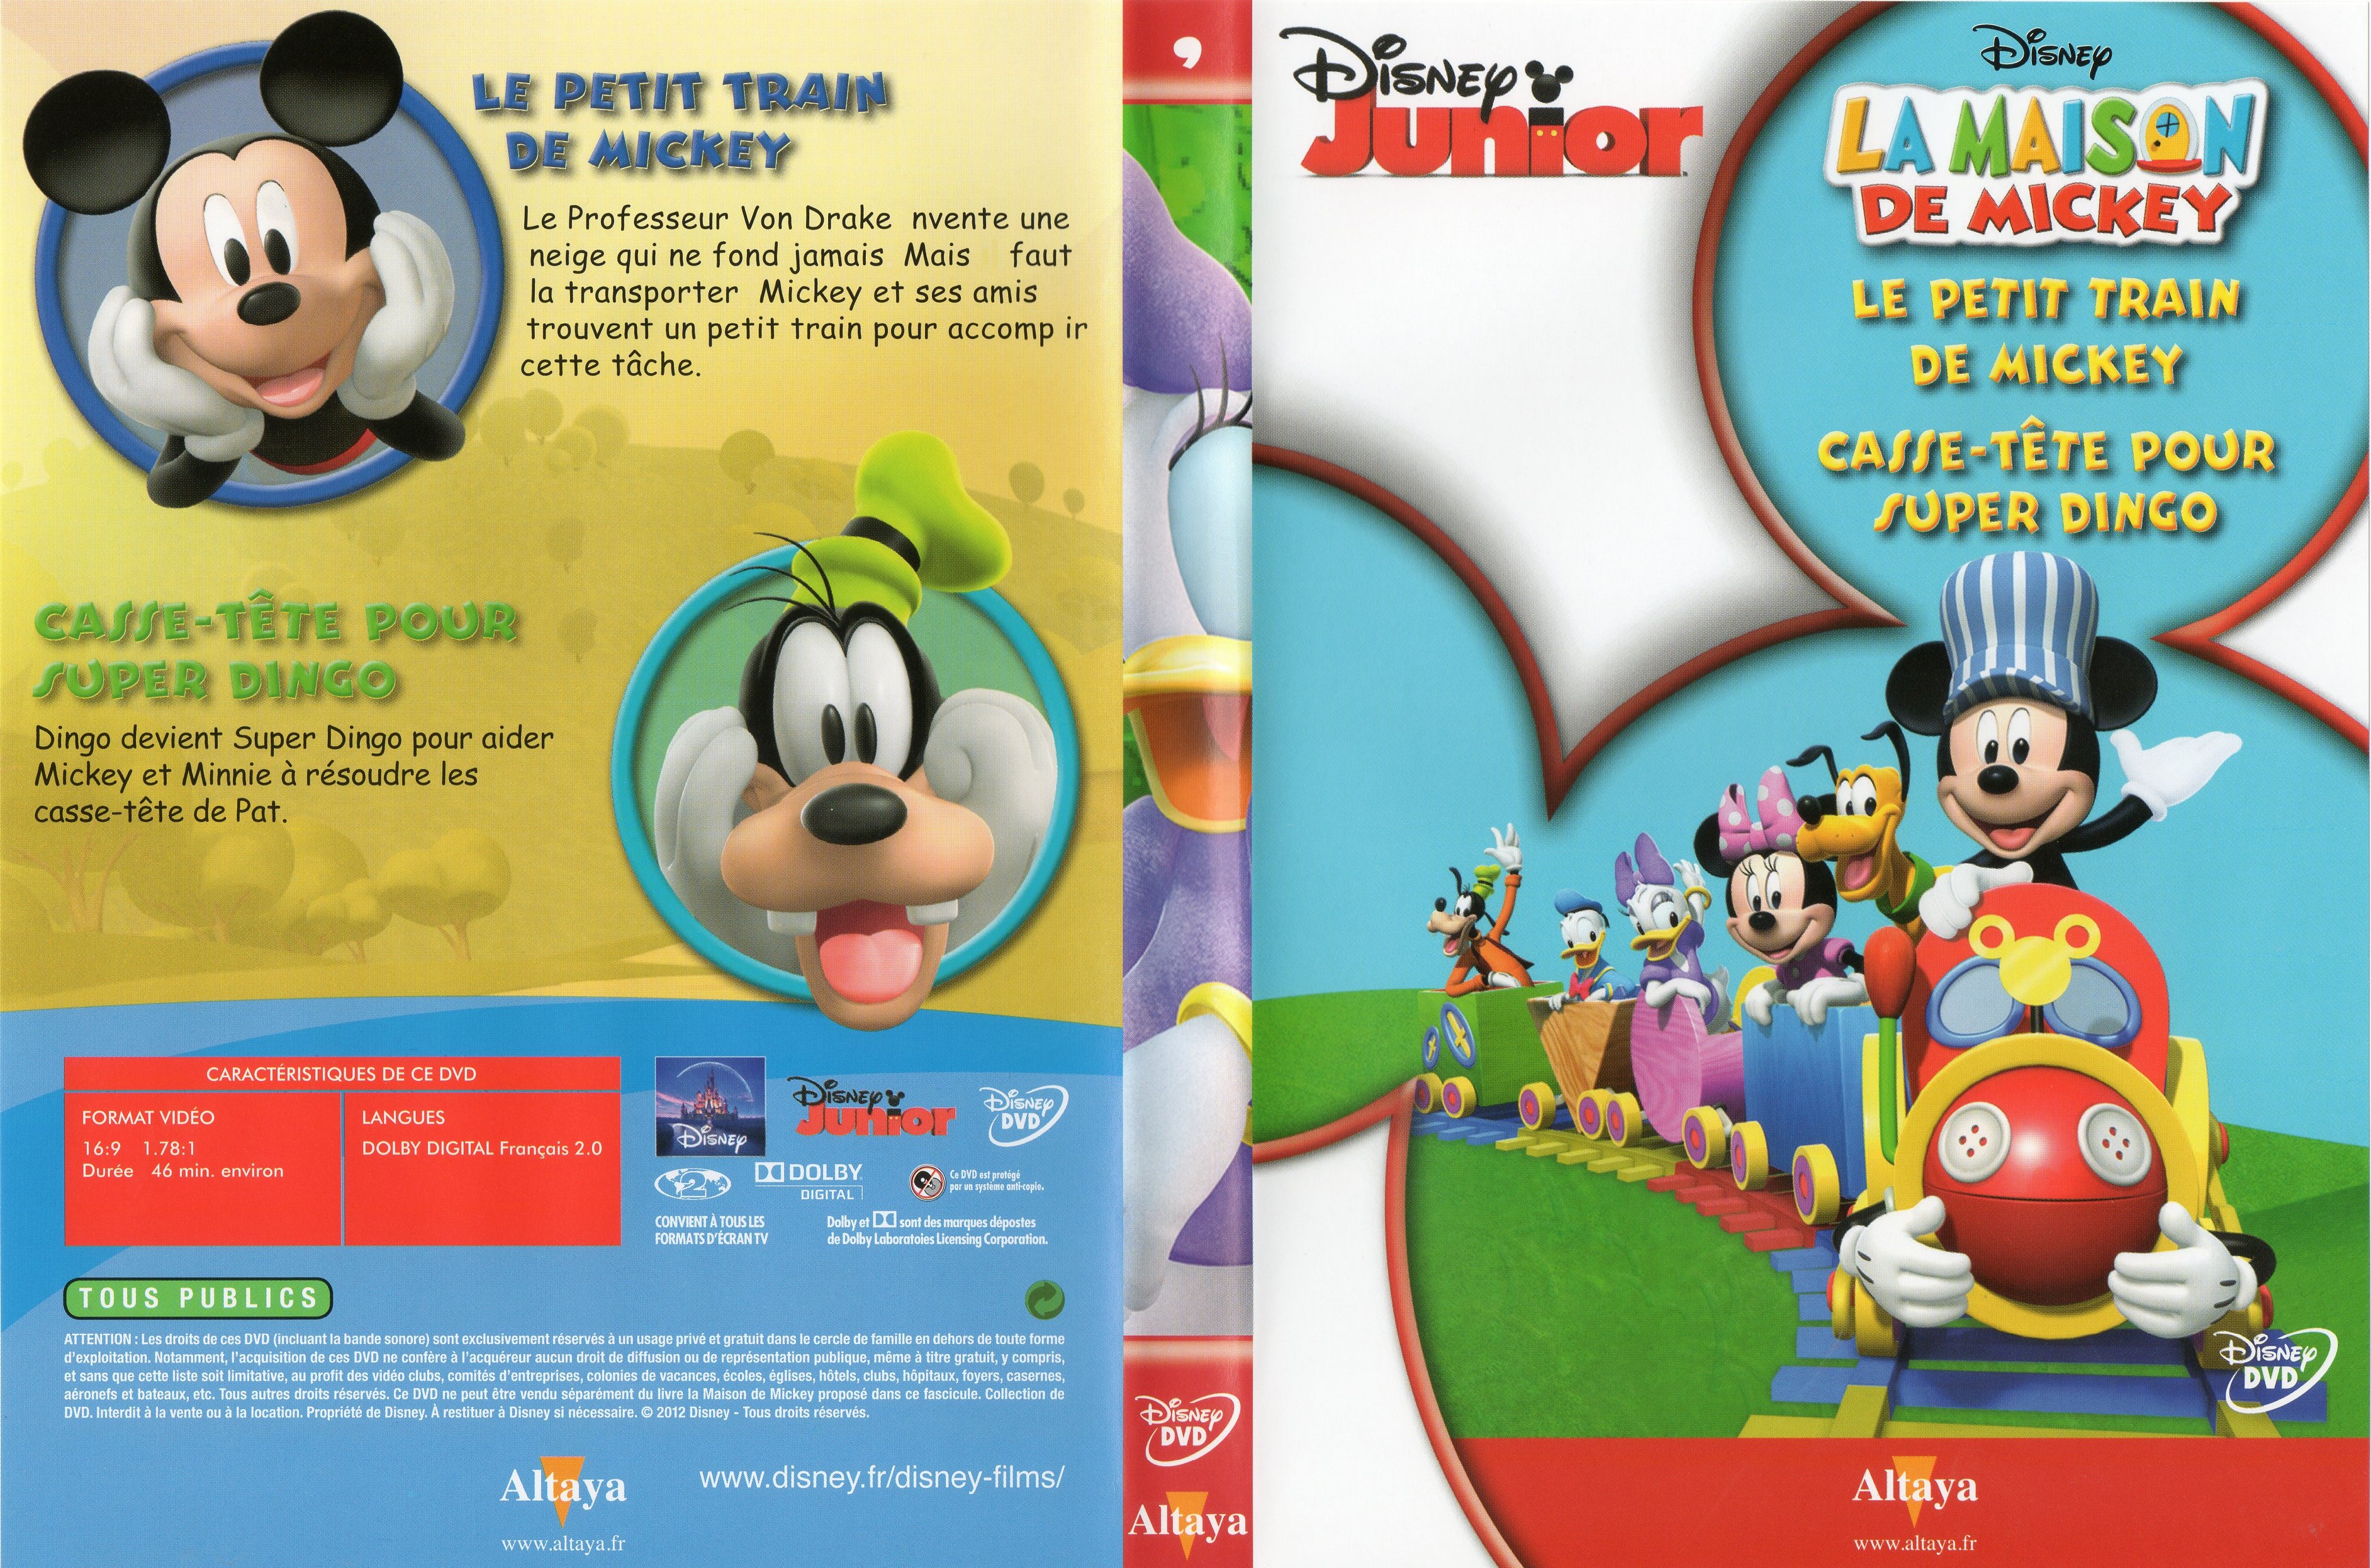 Jaquette DVD La maison de Mickey DVD 09